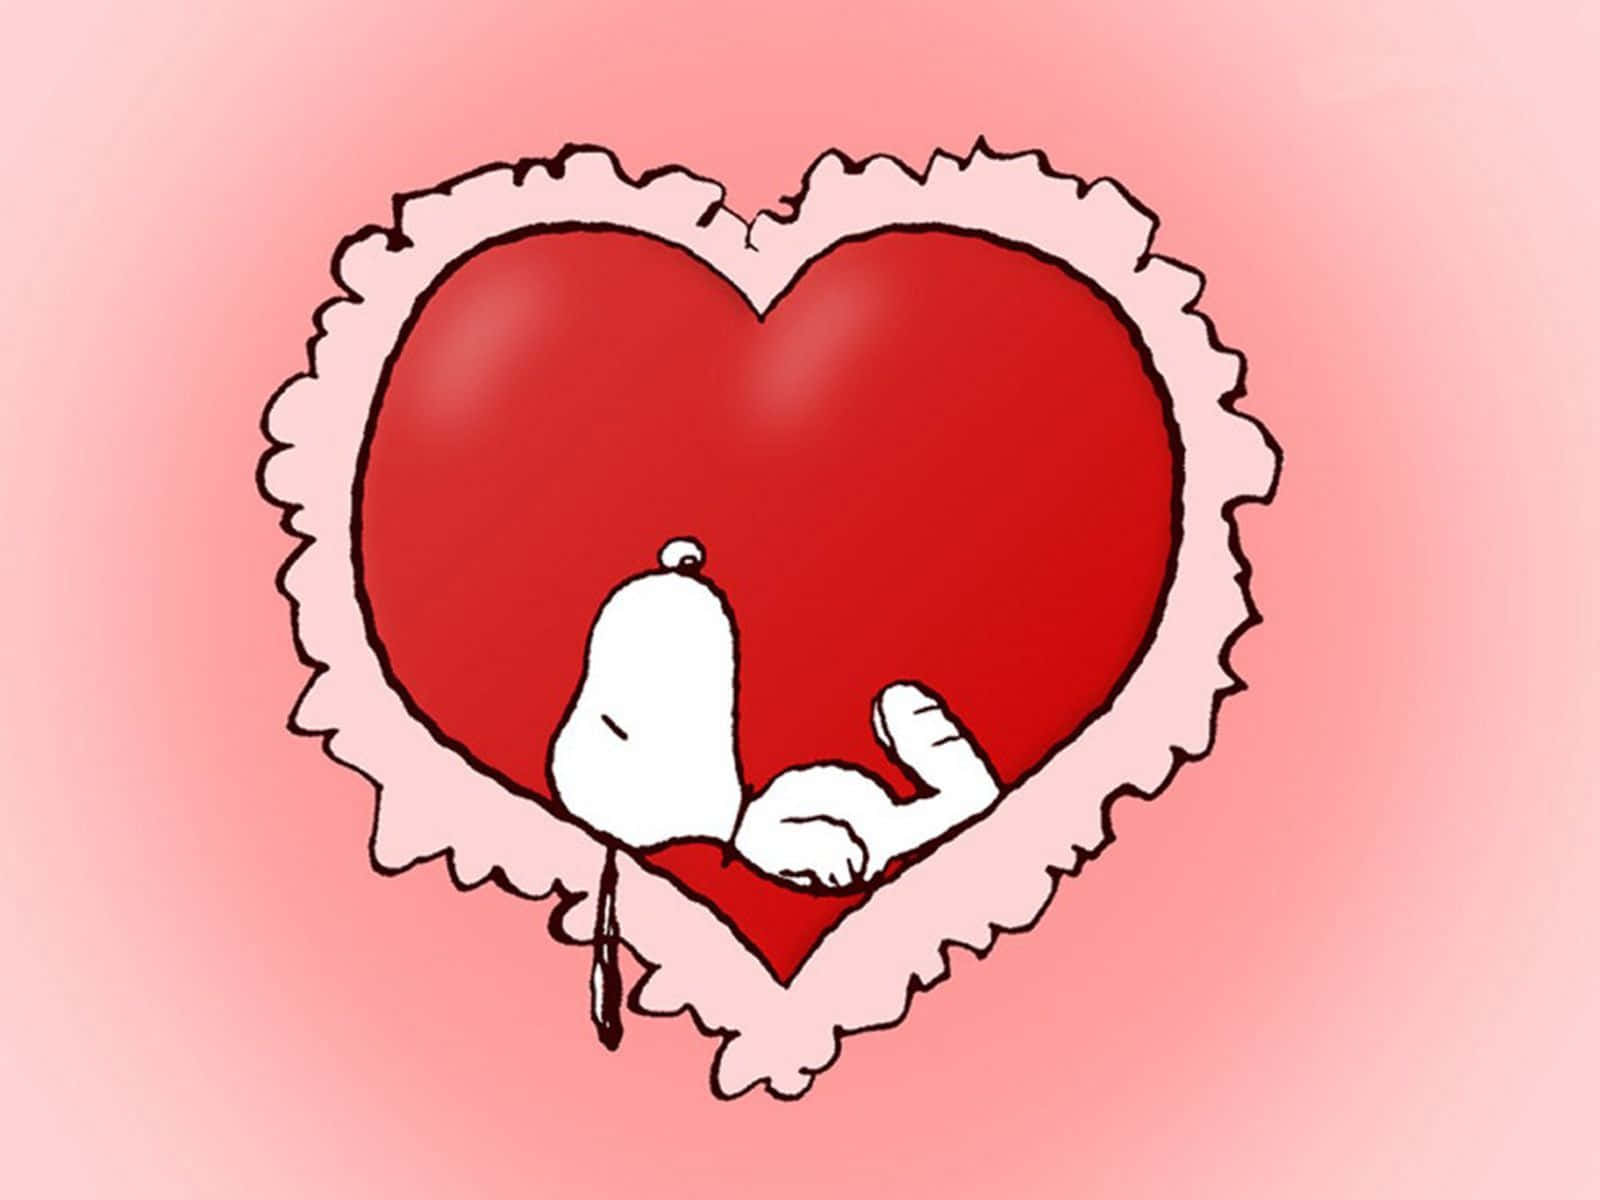 Feiernsie Den Valentinstag Mit Snoopy Wallpaper